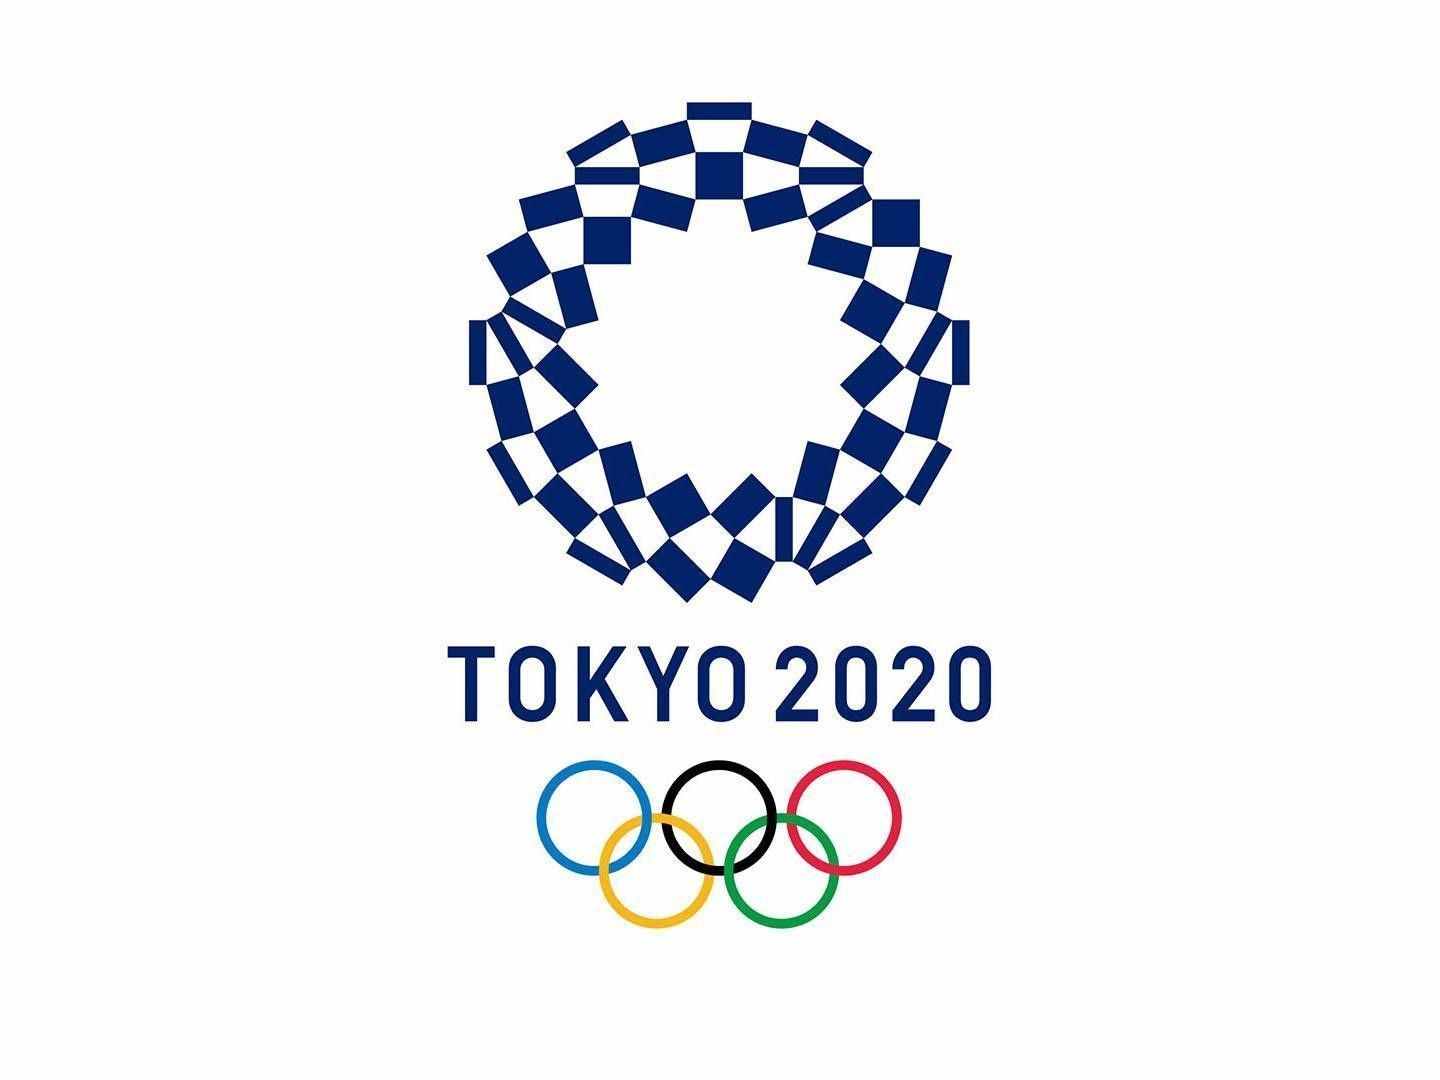 124年首次！奥运会将在单数年举办 2021年举办仍叫"2020东京奥运"